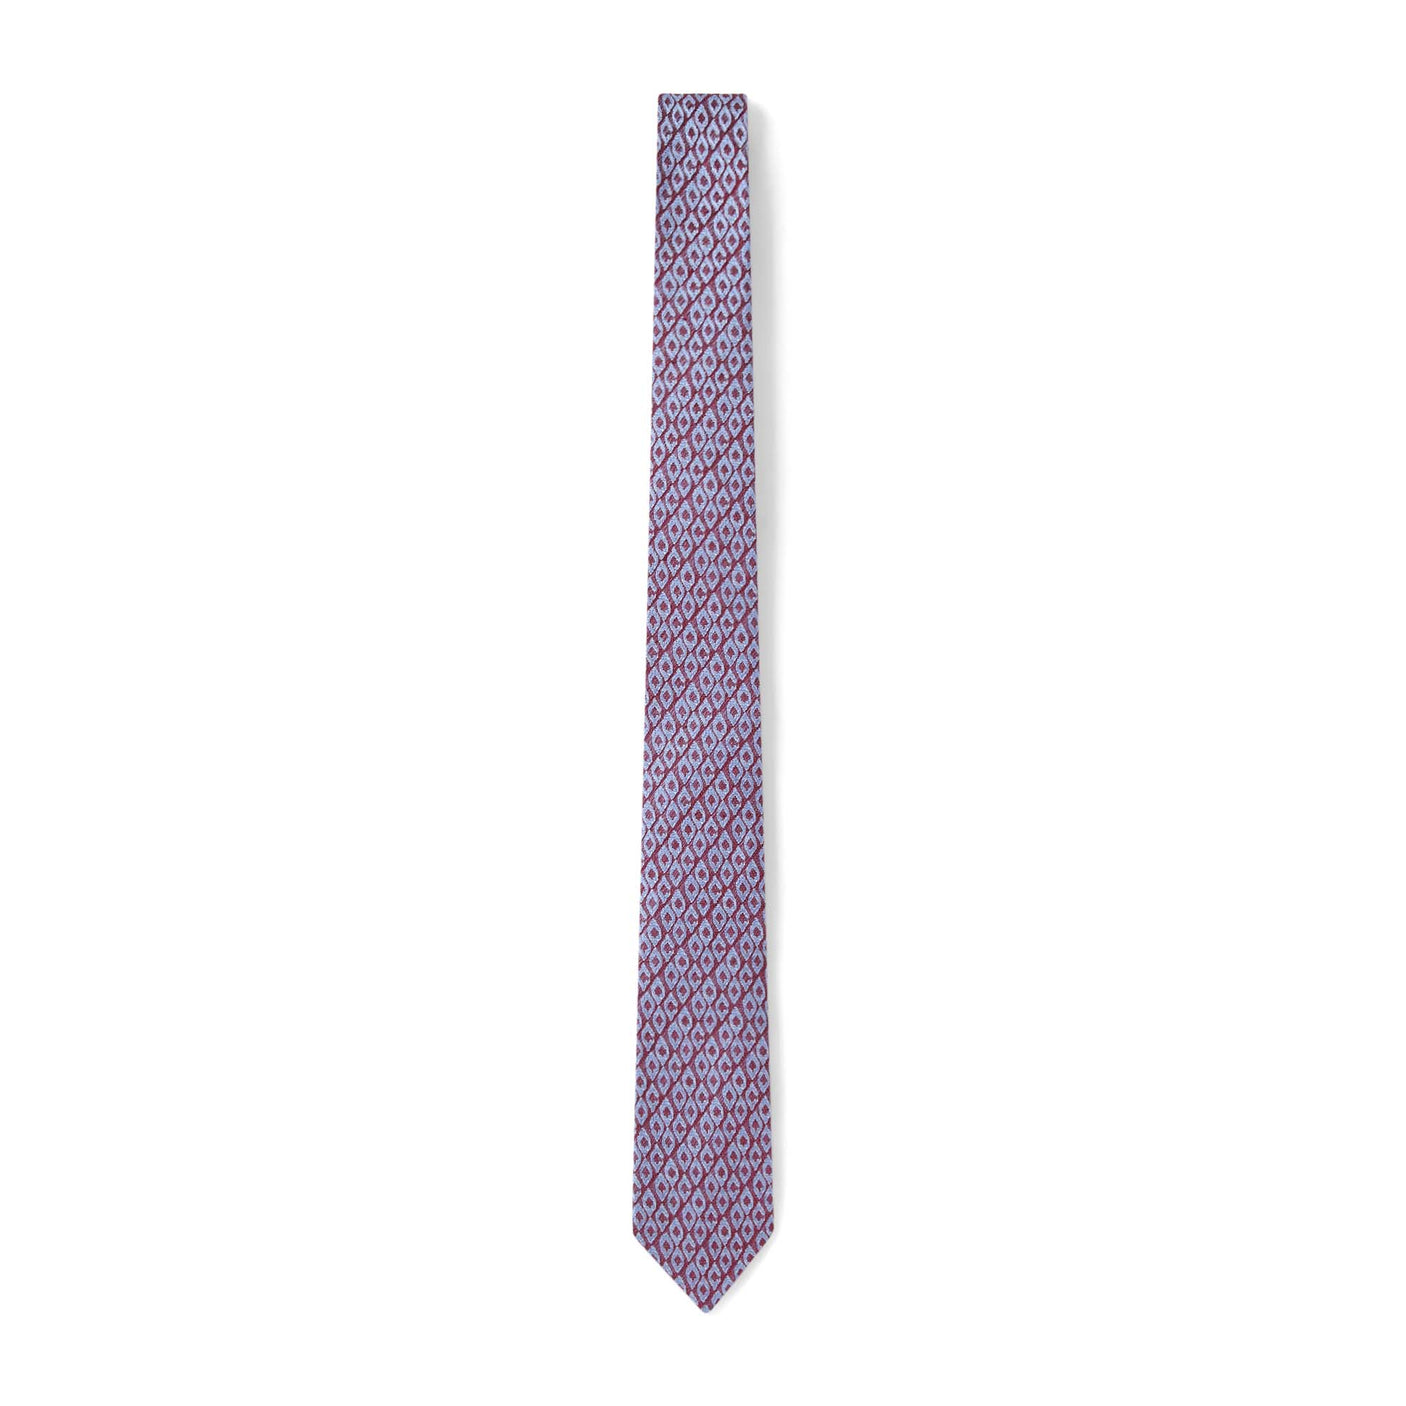 Cravate à motif ovales bordeaux et bleu ciel